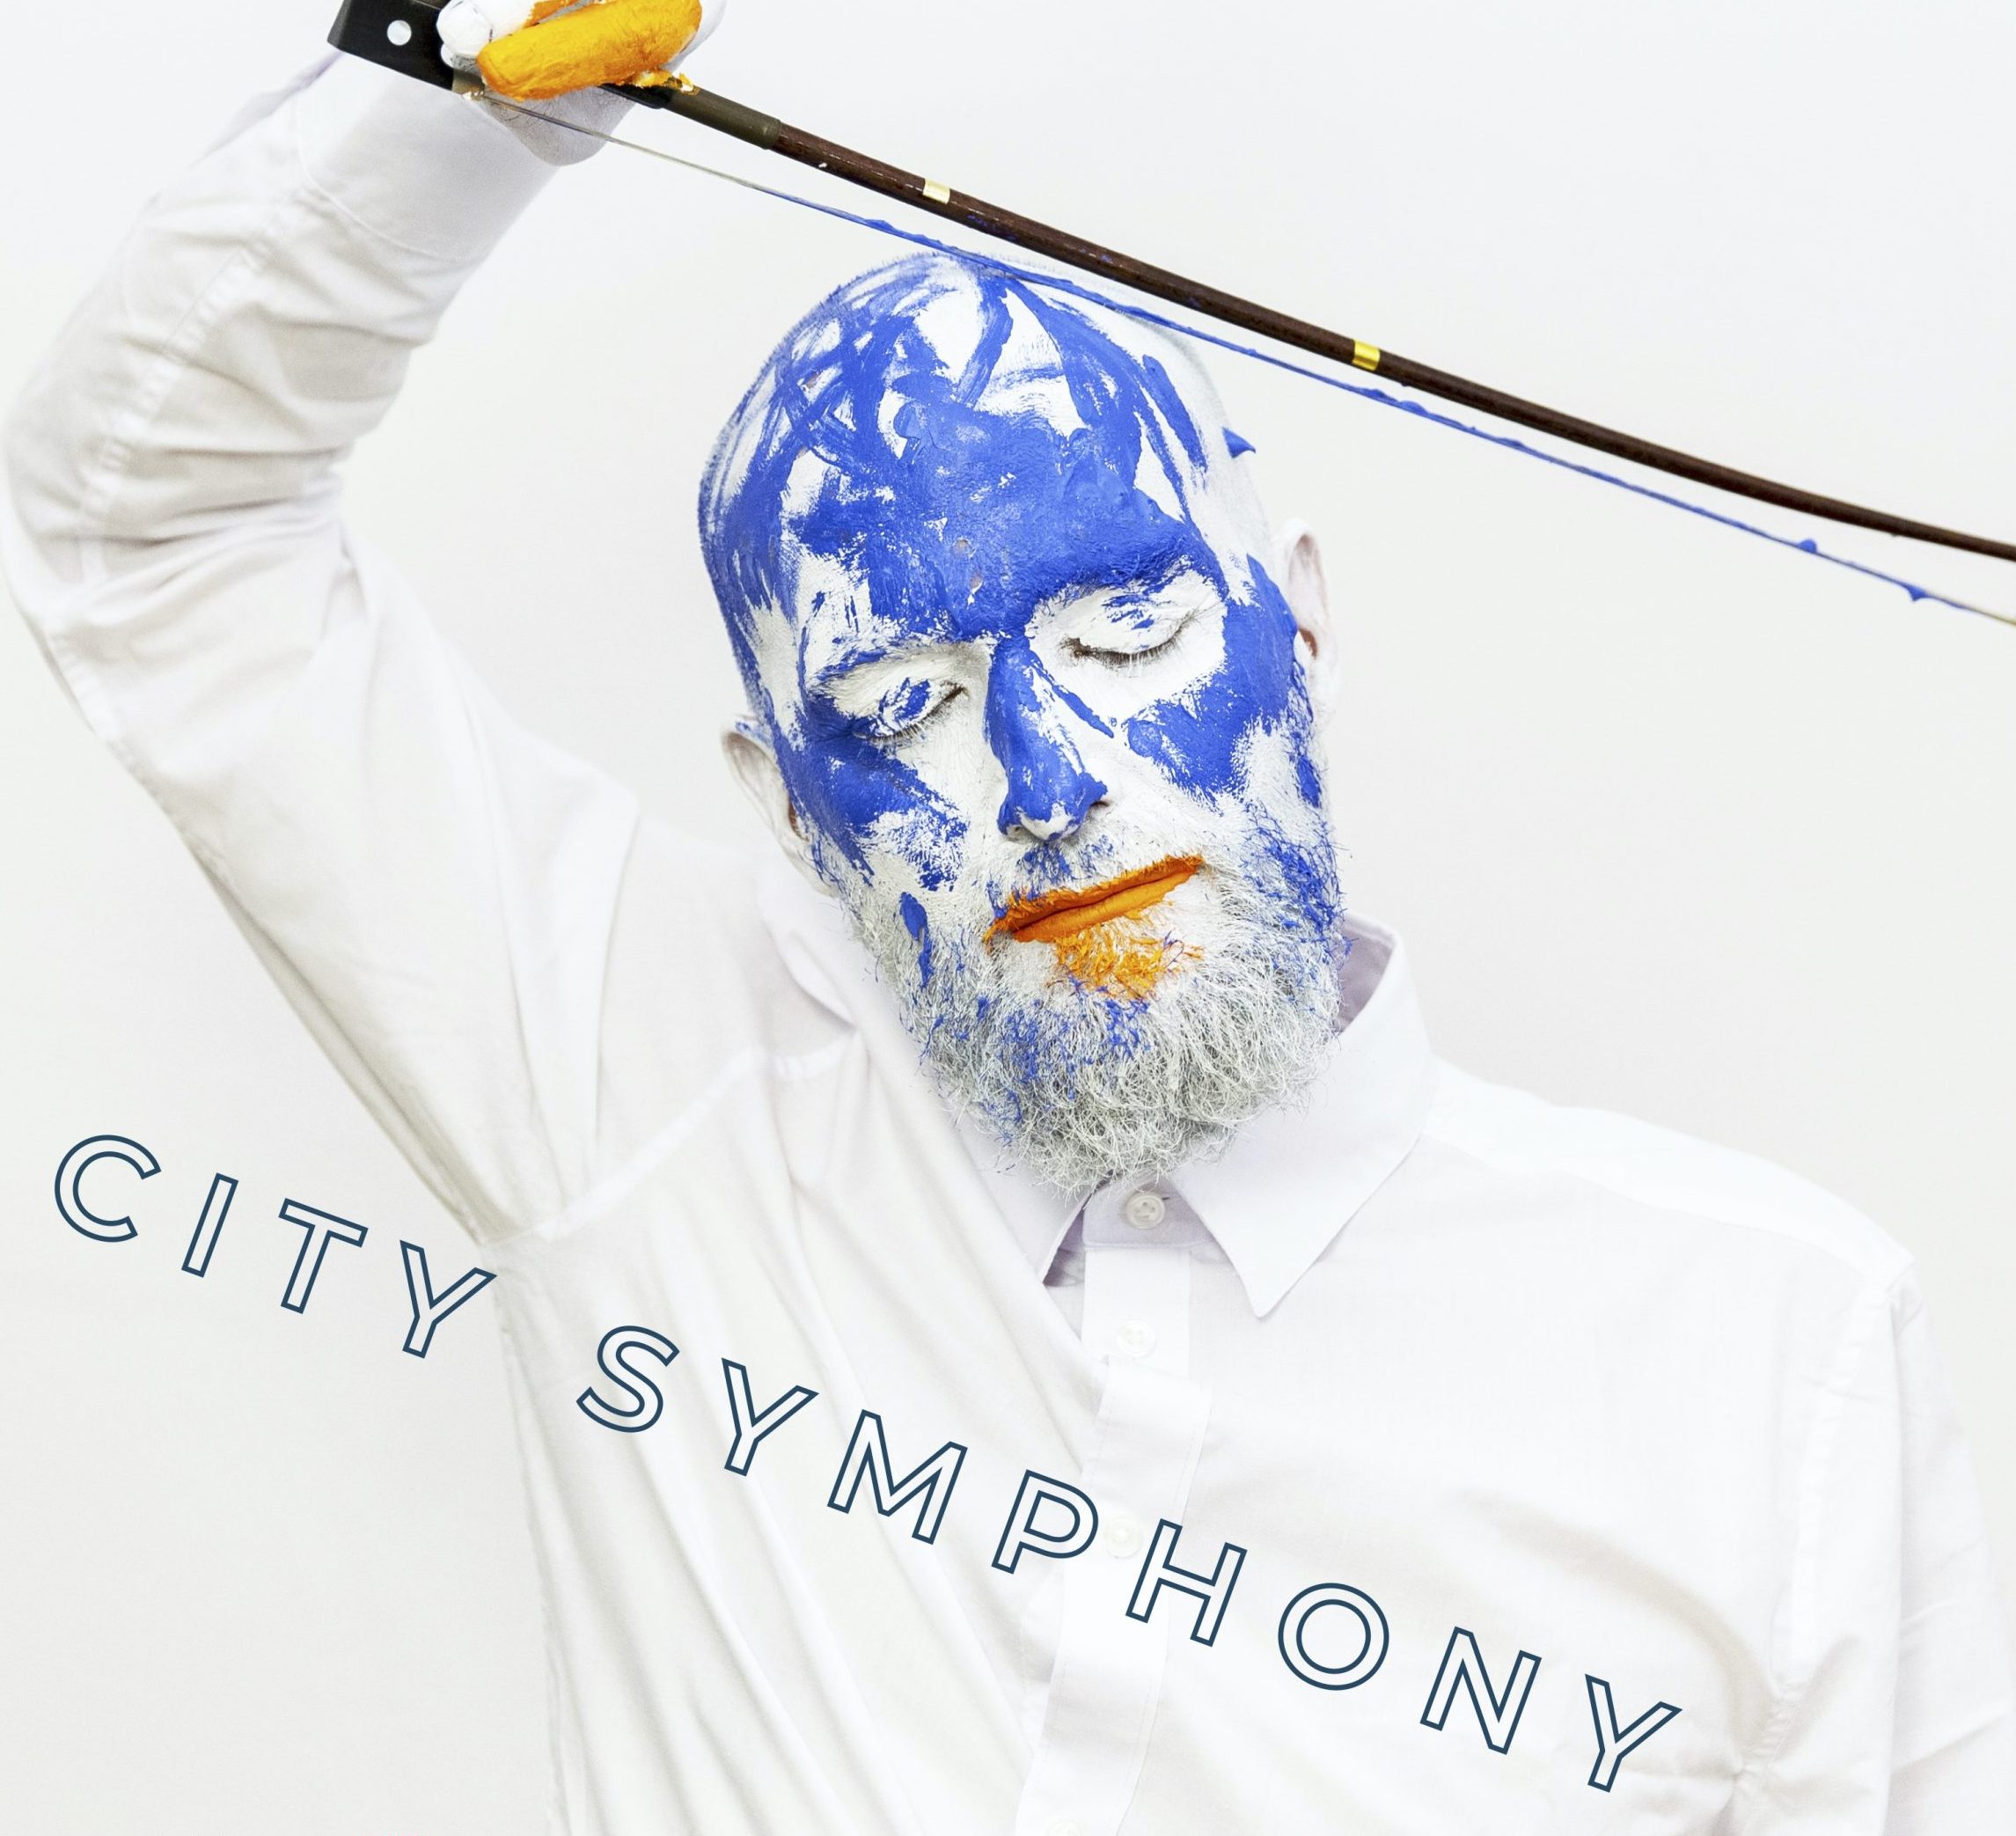 CITY SYMPHONY – dźwiękowy spacer artystyczny